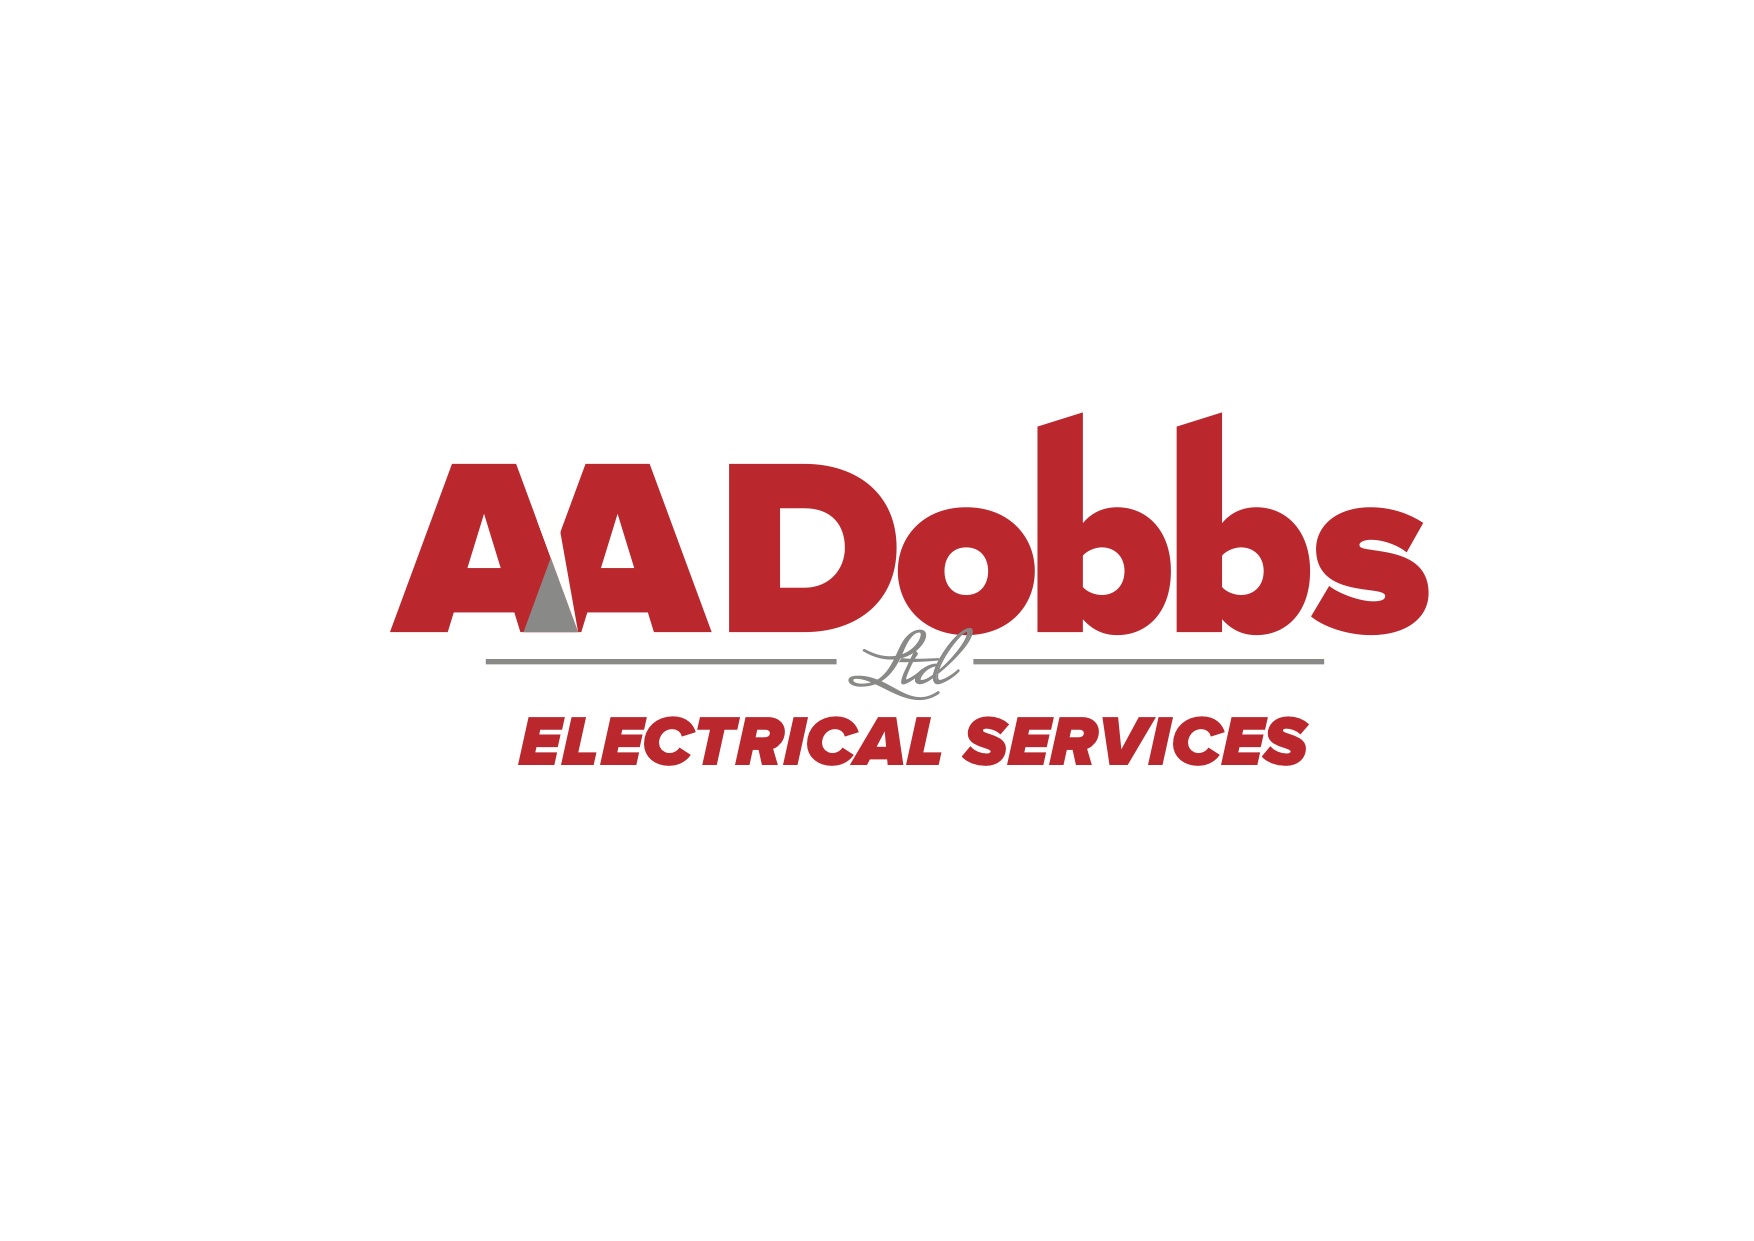 AADobbs Logo.jpg